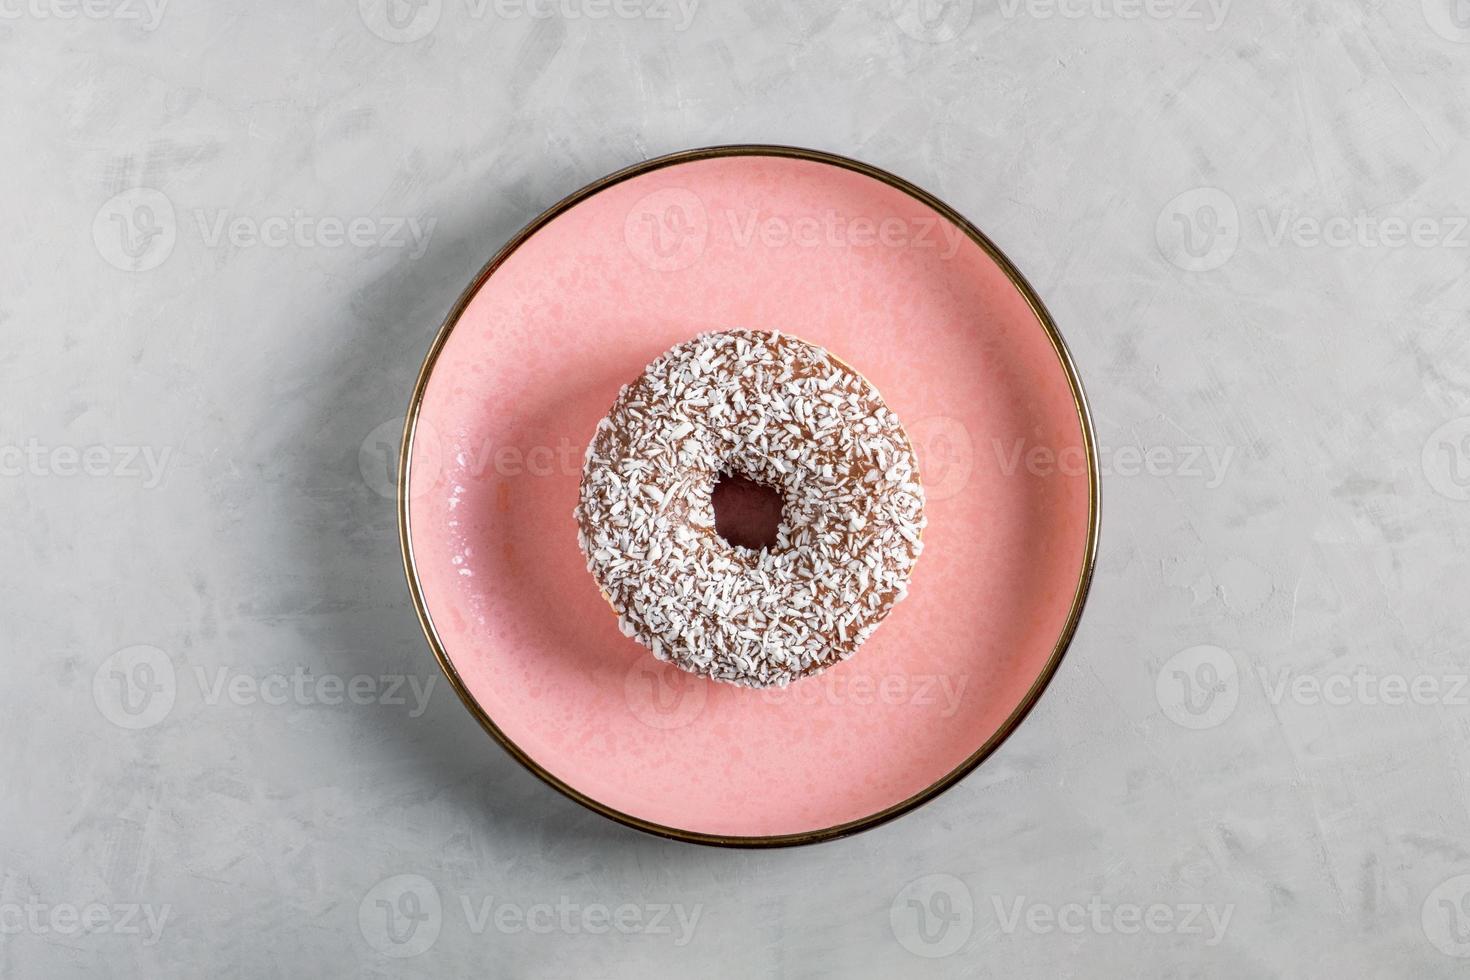 beignet avec garniture de noix de coco se trouve sur une plaque en céramique rose photo